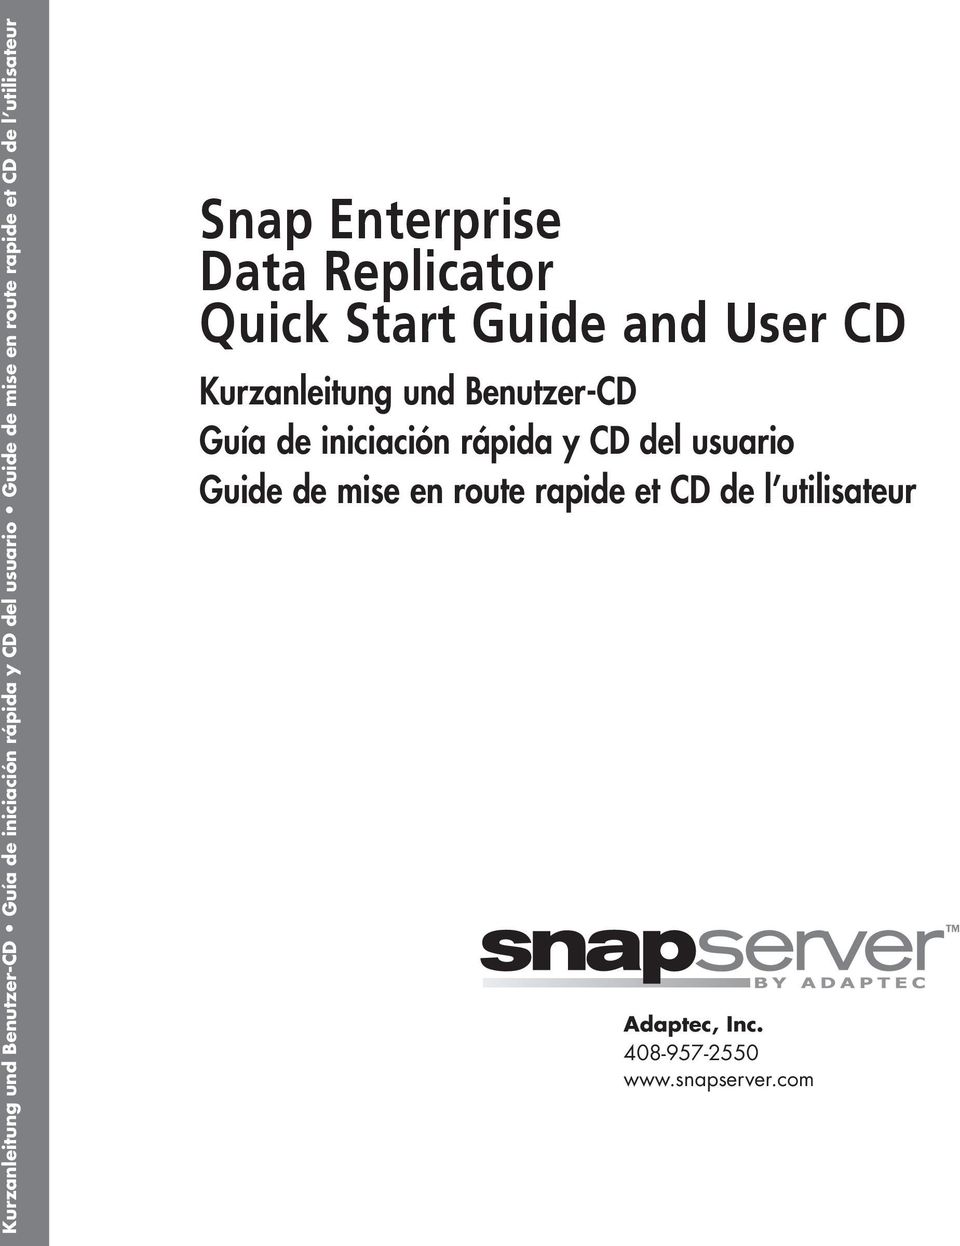 User CD  route rapide et CD de l utilisateur Adaptec, Inc. 408-957-2550 www.snapserver.